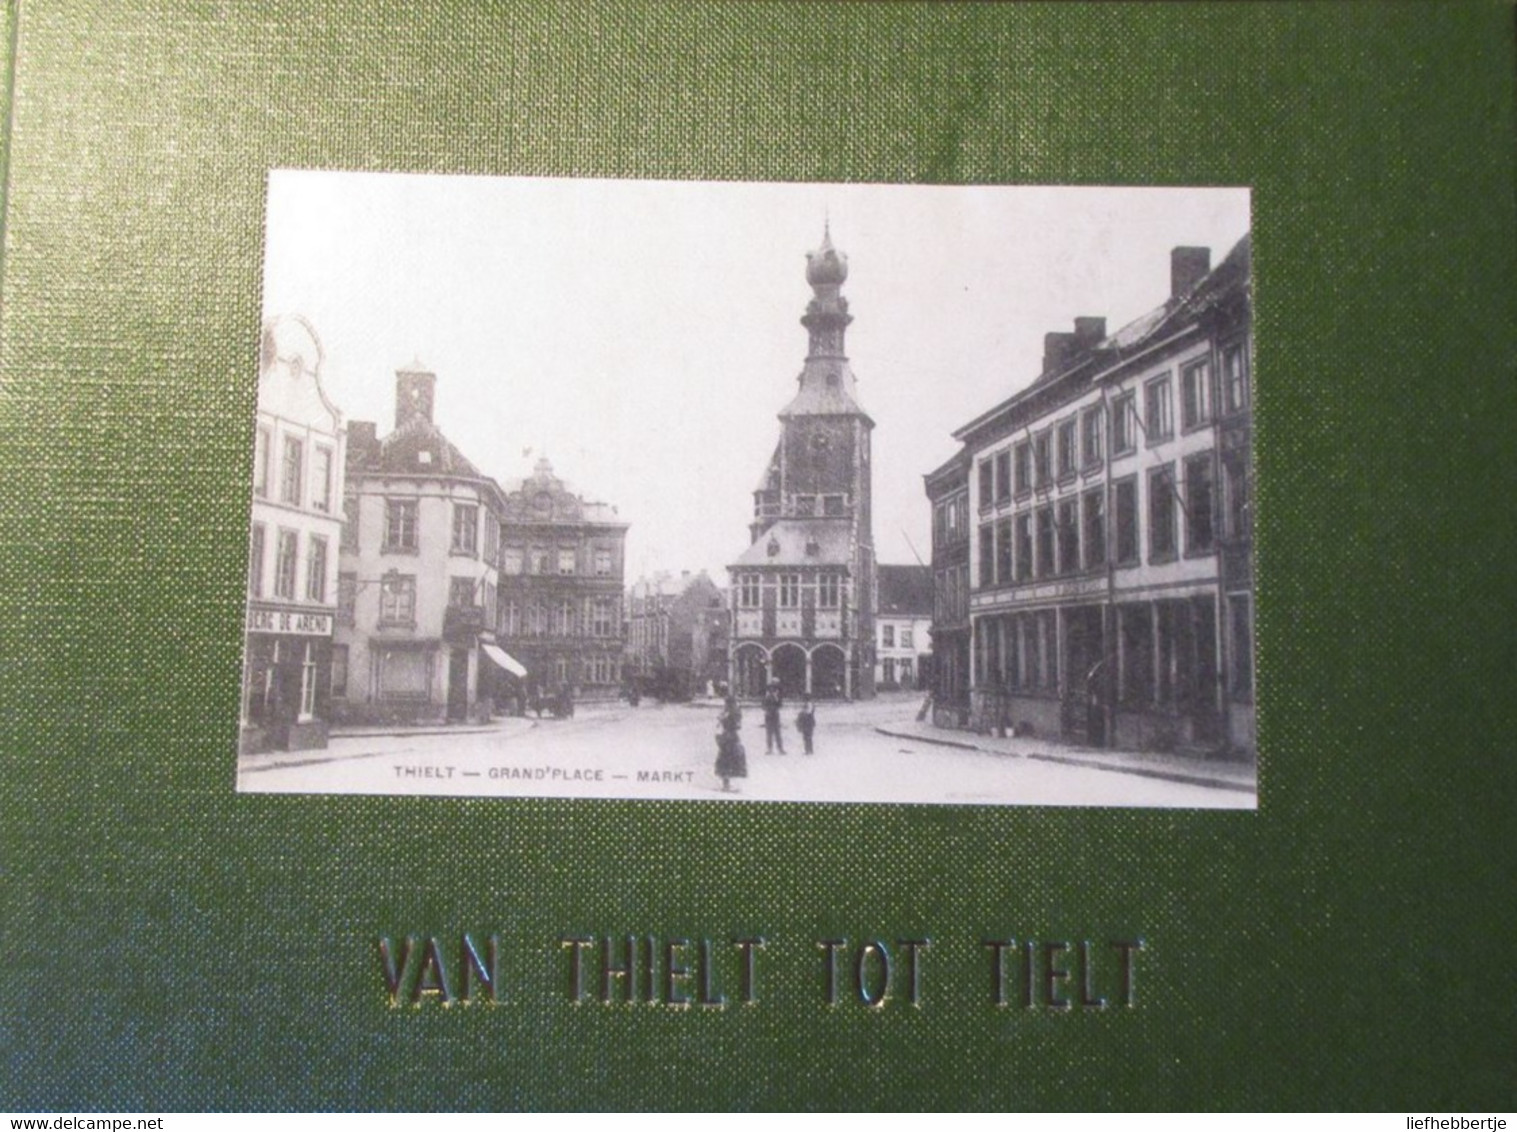 Van Thielt Tot Tielt - Postkaarten - 1975 - History